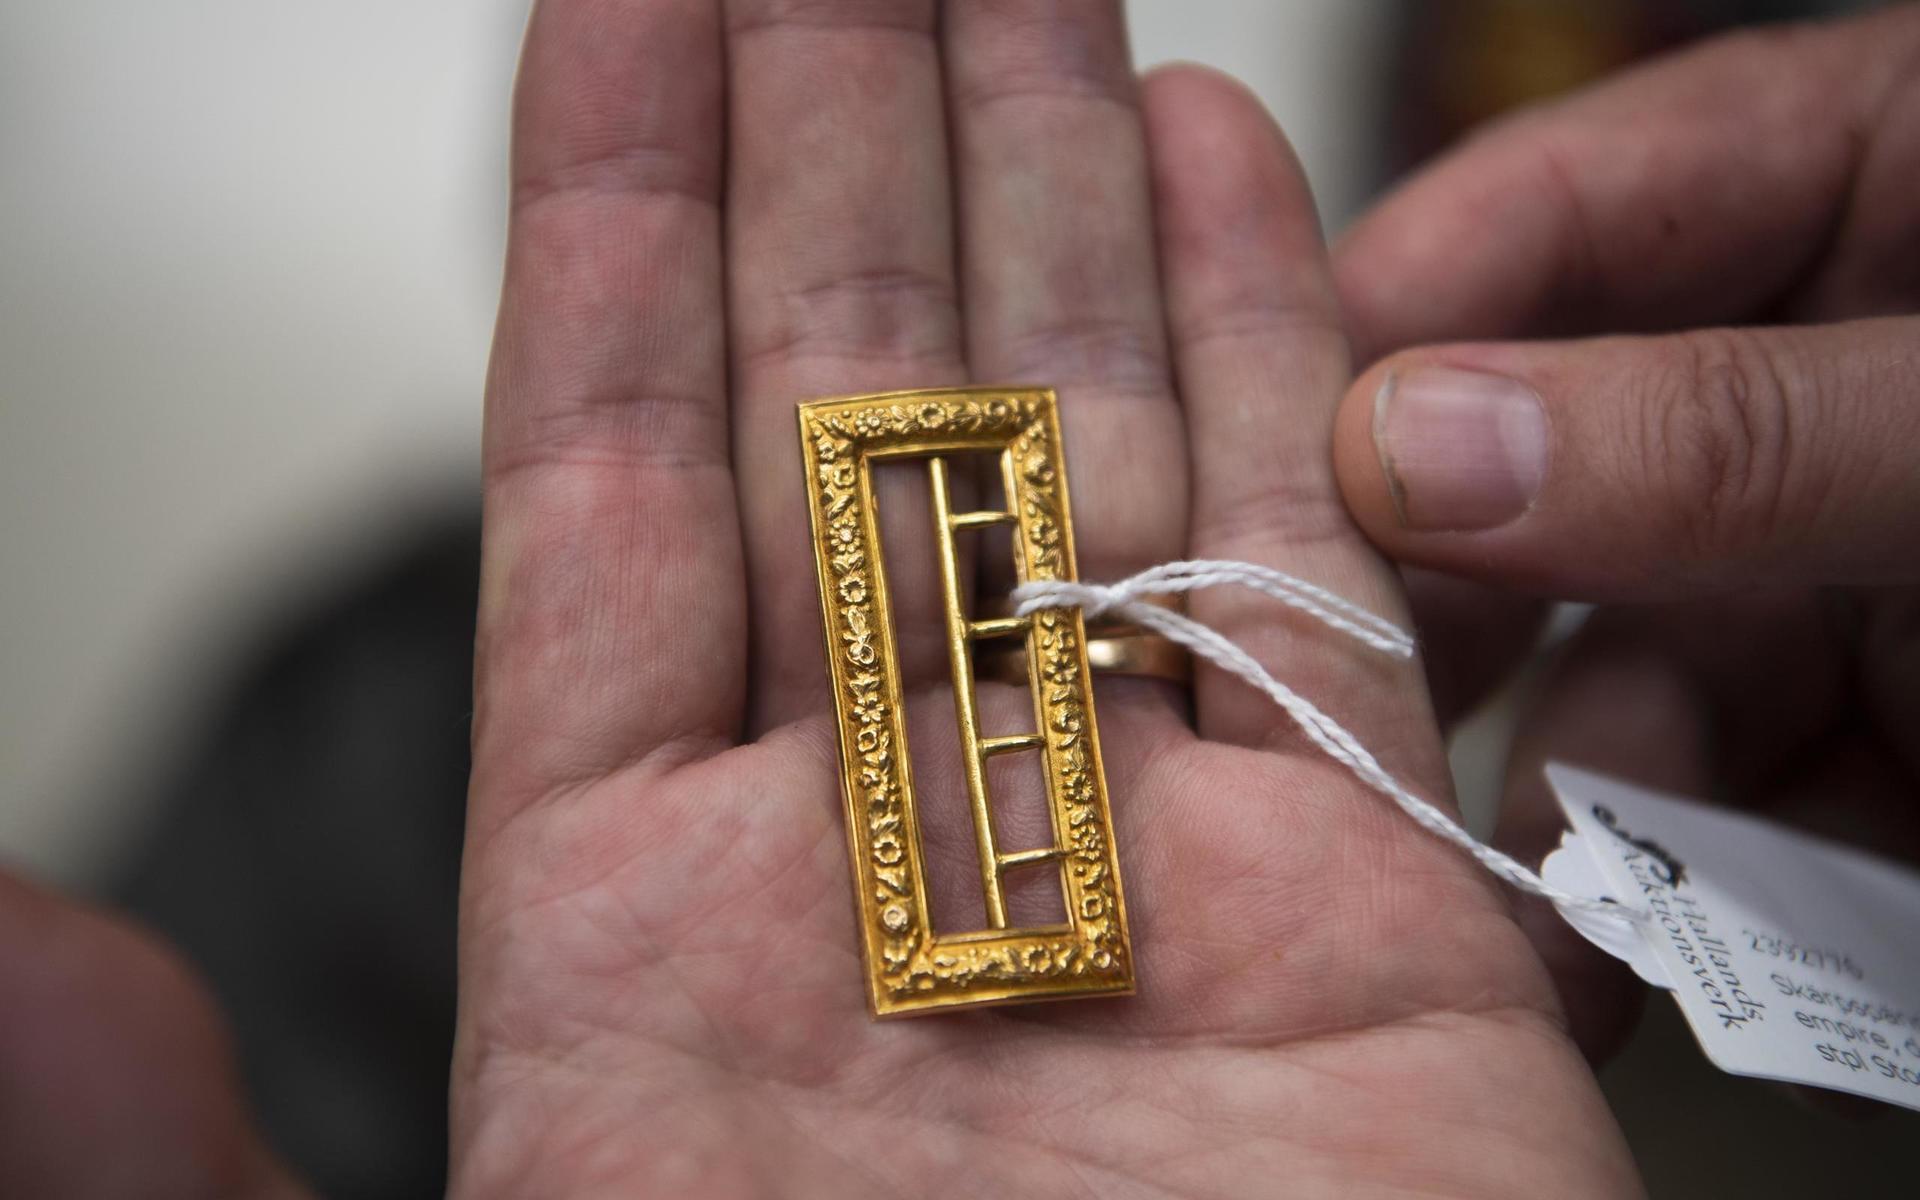 ”Det här är ett gammalt skärpspänne i guld, 18 karat. Den här typen av föremål är väldigt sällsynta i dag eftersom de nästan alltid smältes ner.”